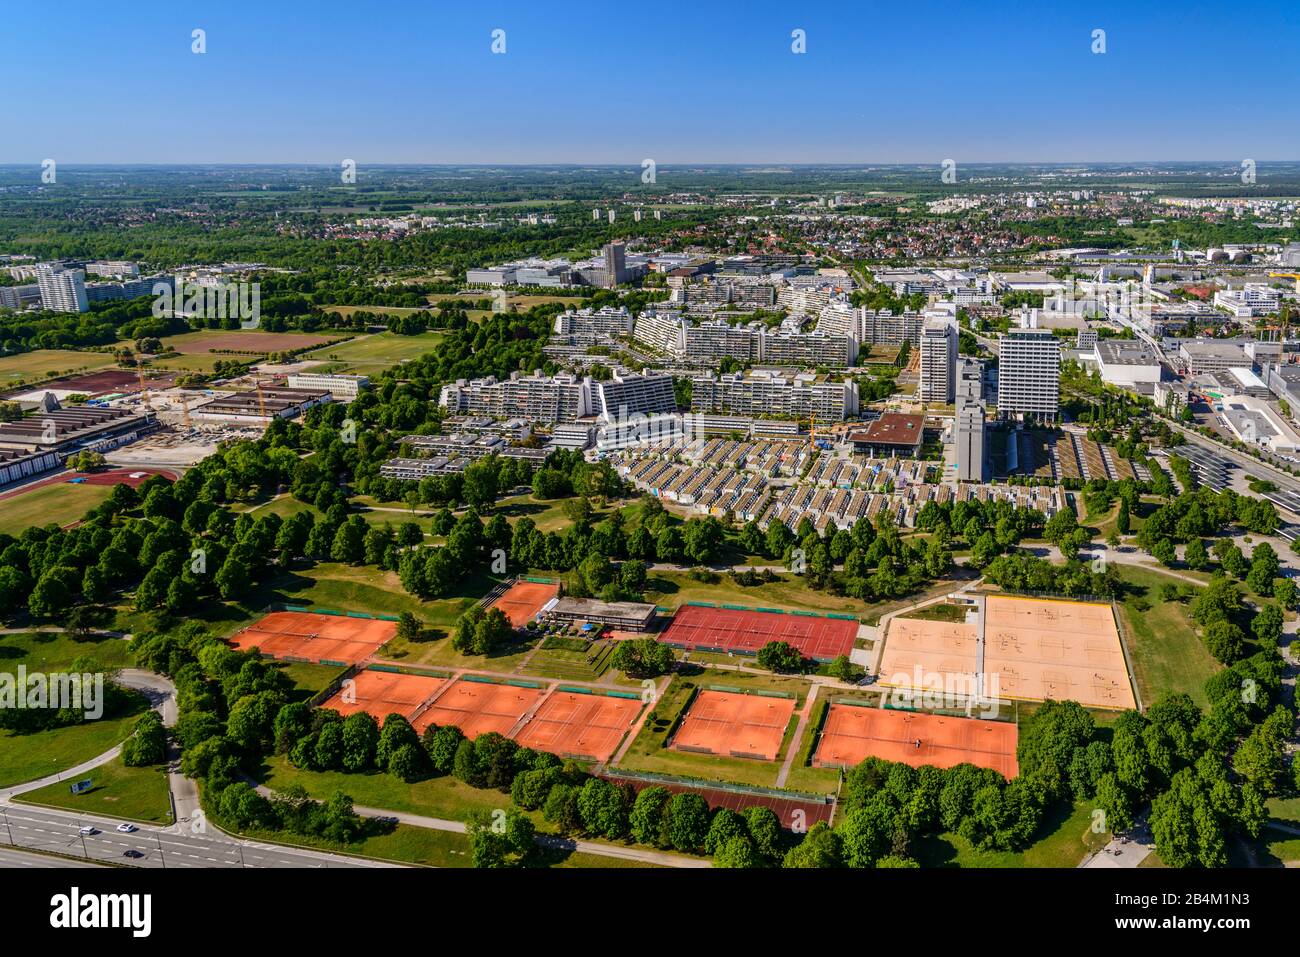 Deutschland, Bayern, Oberbayern, München, Wohngebiet Olympisches Dorf mit Tennisplätzen, Blick vom Olympiaturm Stock Photo